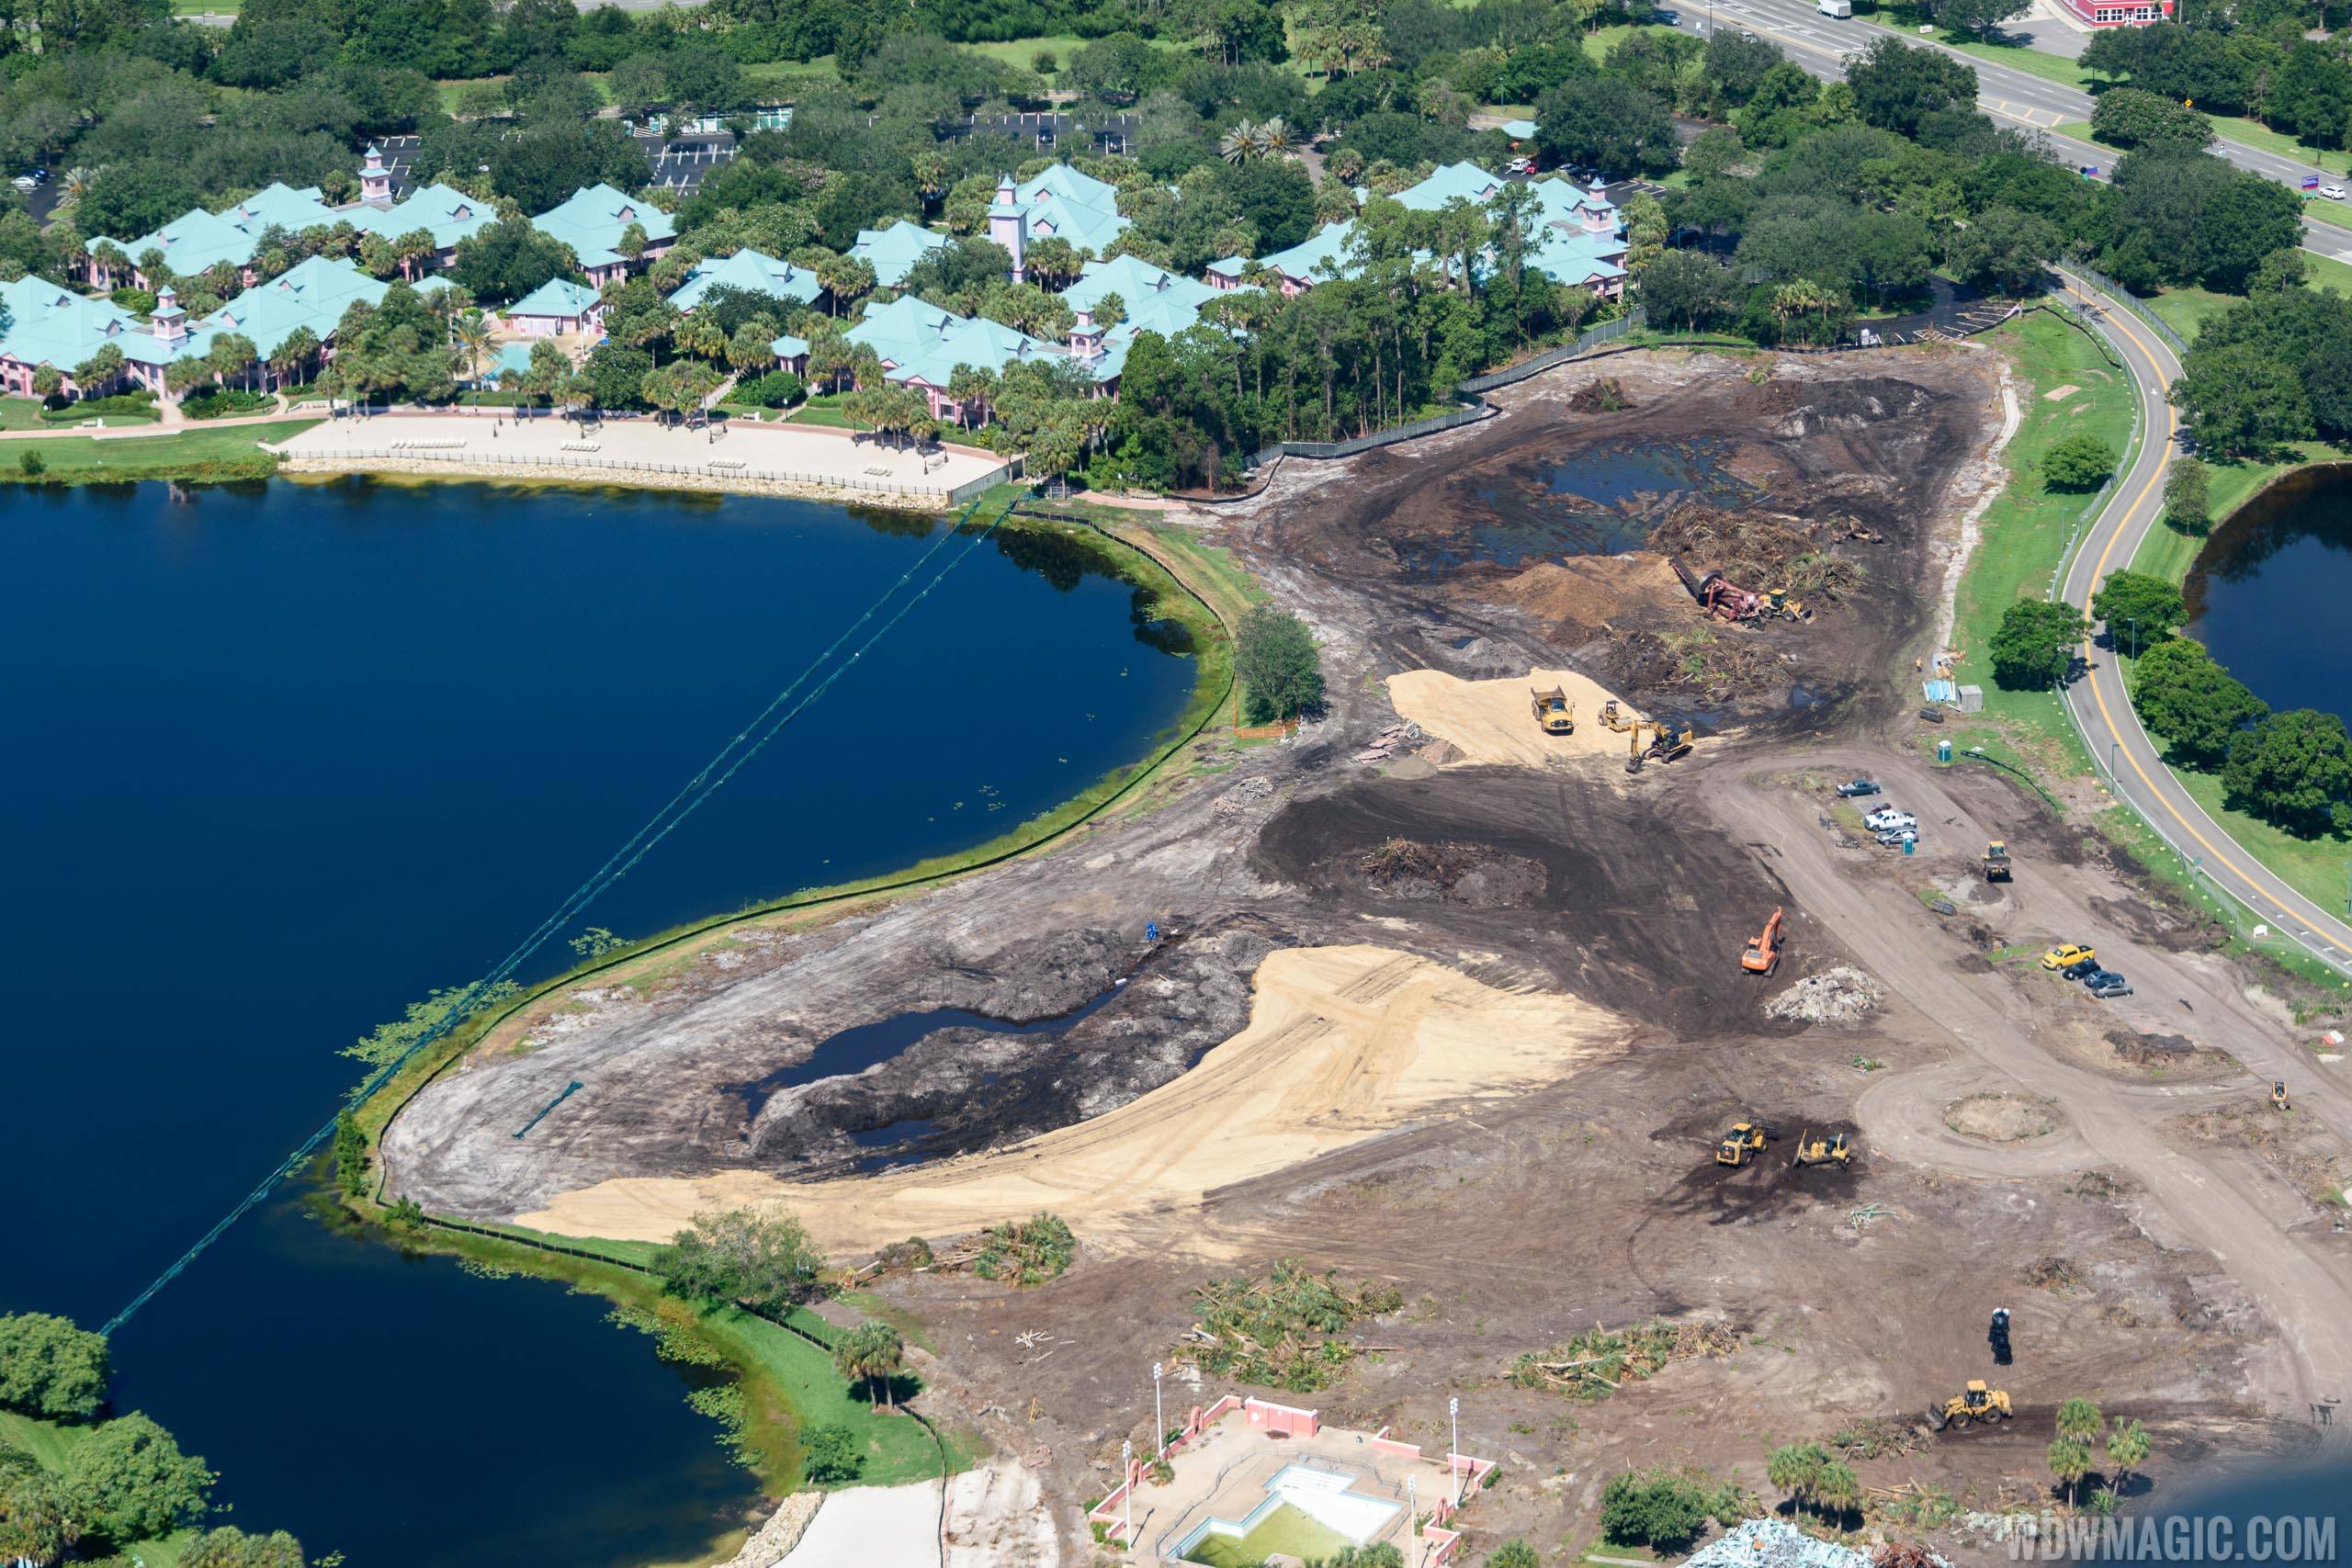 Beach Resort's demolition begins